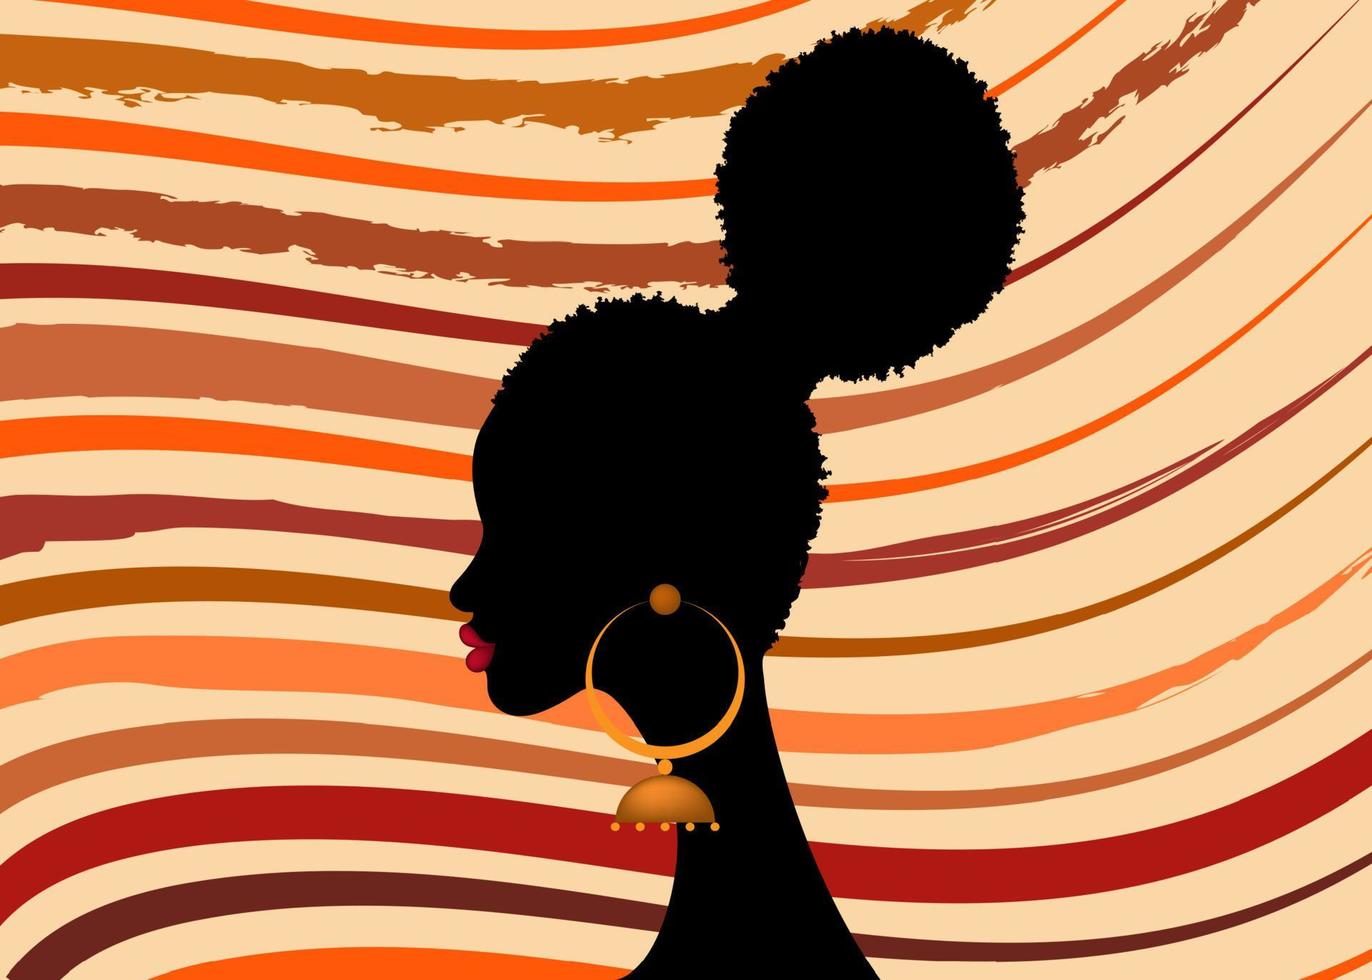 acconciatura africana, ritratto di donna afro isolato su sfondo a strisce tribale vettore